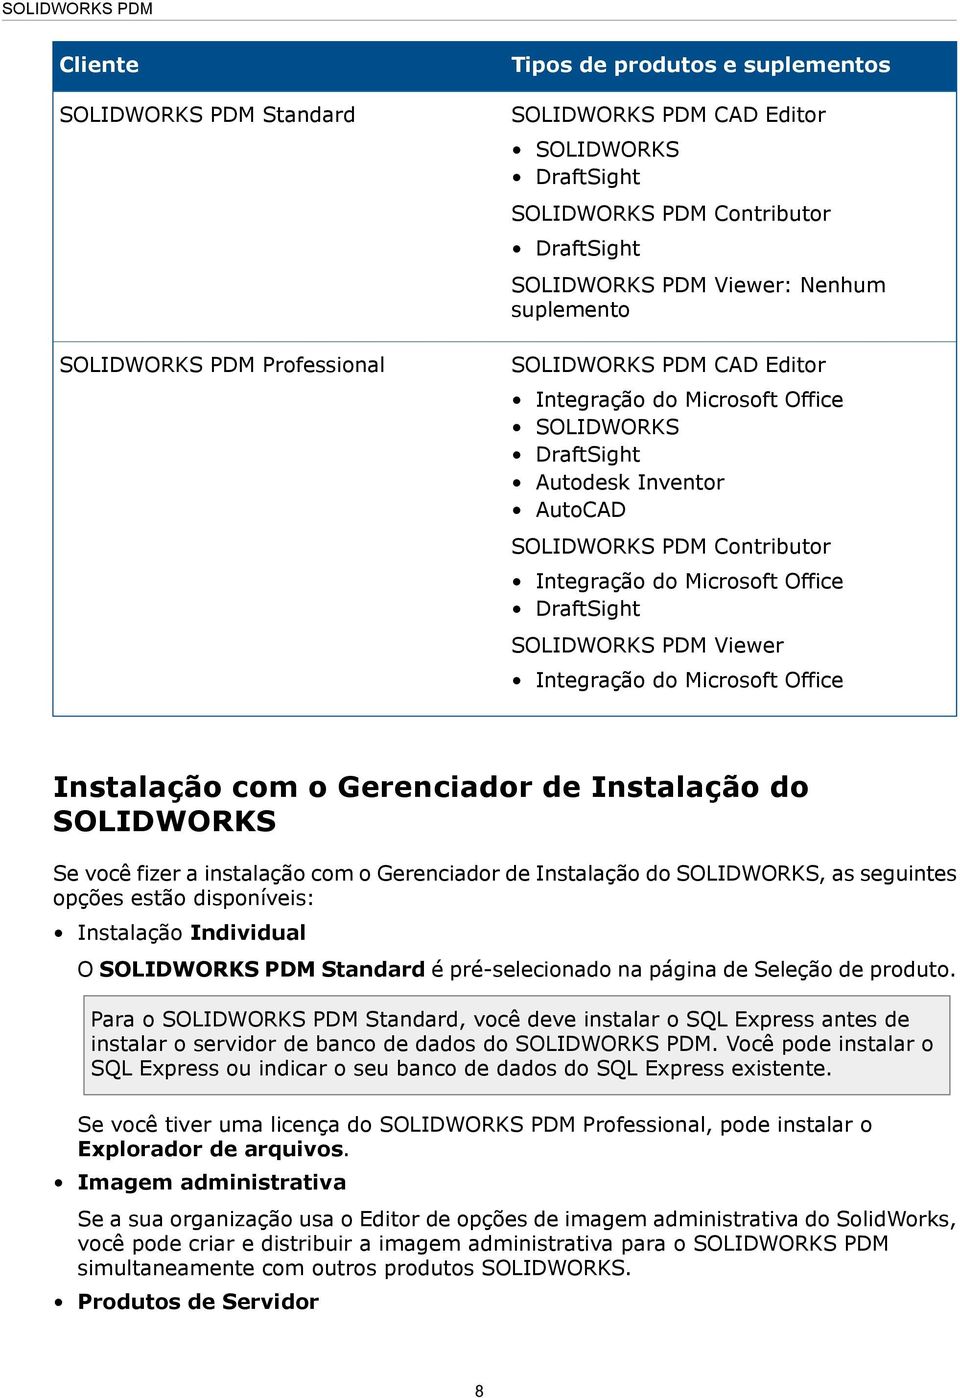 SOLIDWORKS PDM Viewer Integração do Microsoft Office Instalação com o Gerenciador de Instalação do SOLIDWORKS Se você fizer a instalação com o Gerenciador de Instalação do SOLIDWORKS, as seguintes